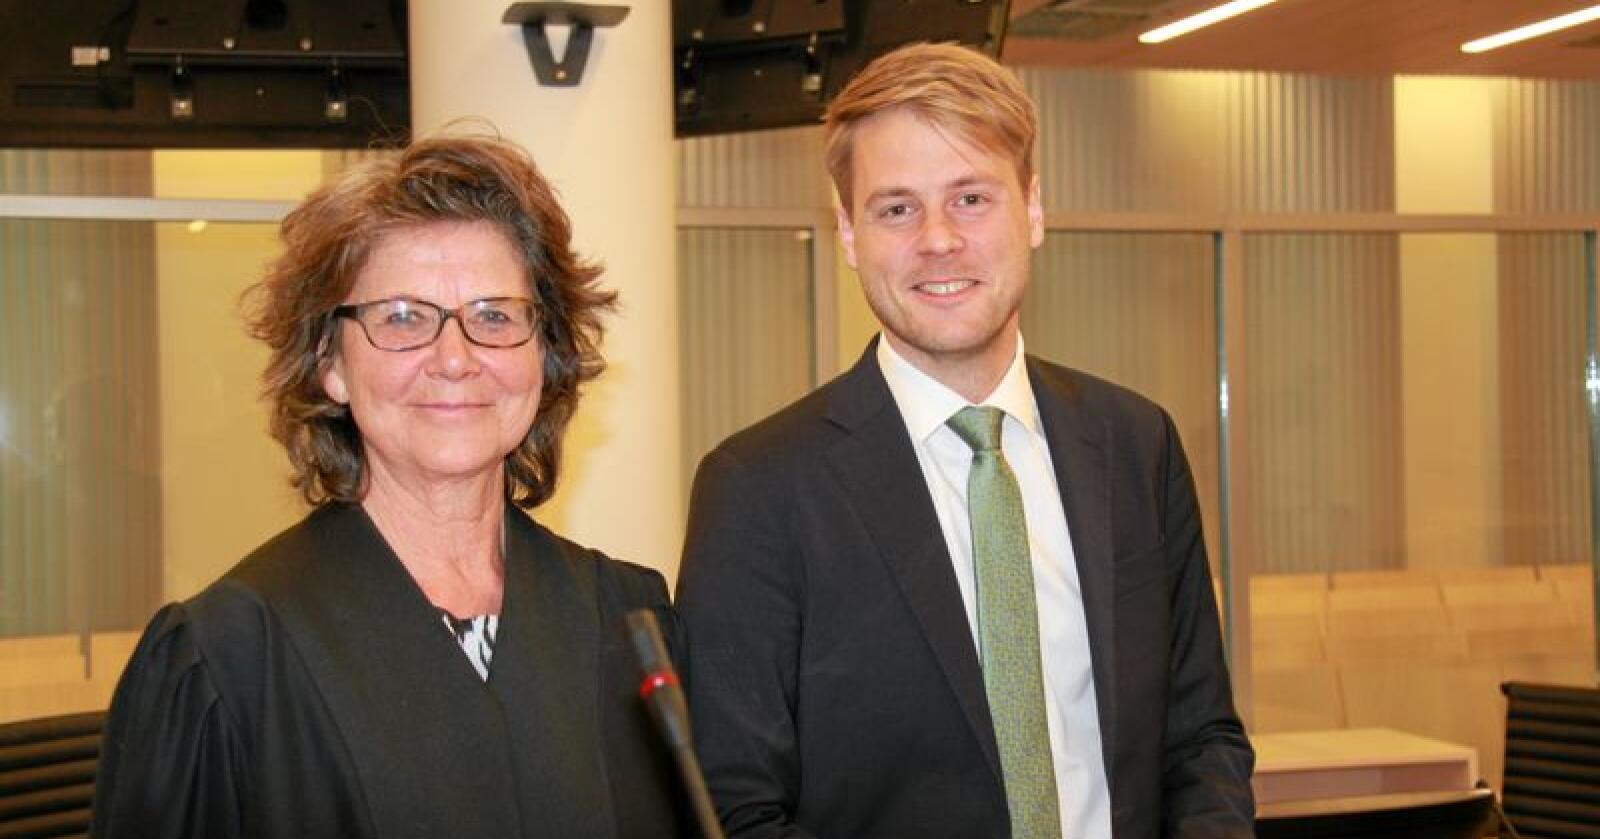 Elisabeth Stenwig og Asgeir Nygård representerer regjeringen i den pågående ulverettssaken i Oslo tingrett. Foto: Svein Egil Hatlevik